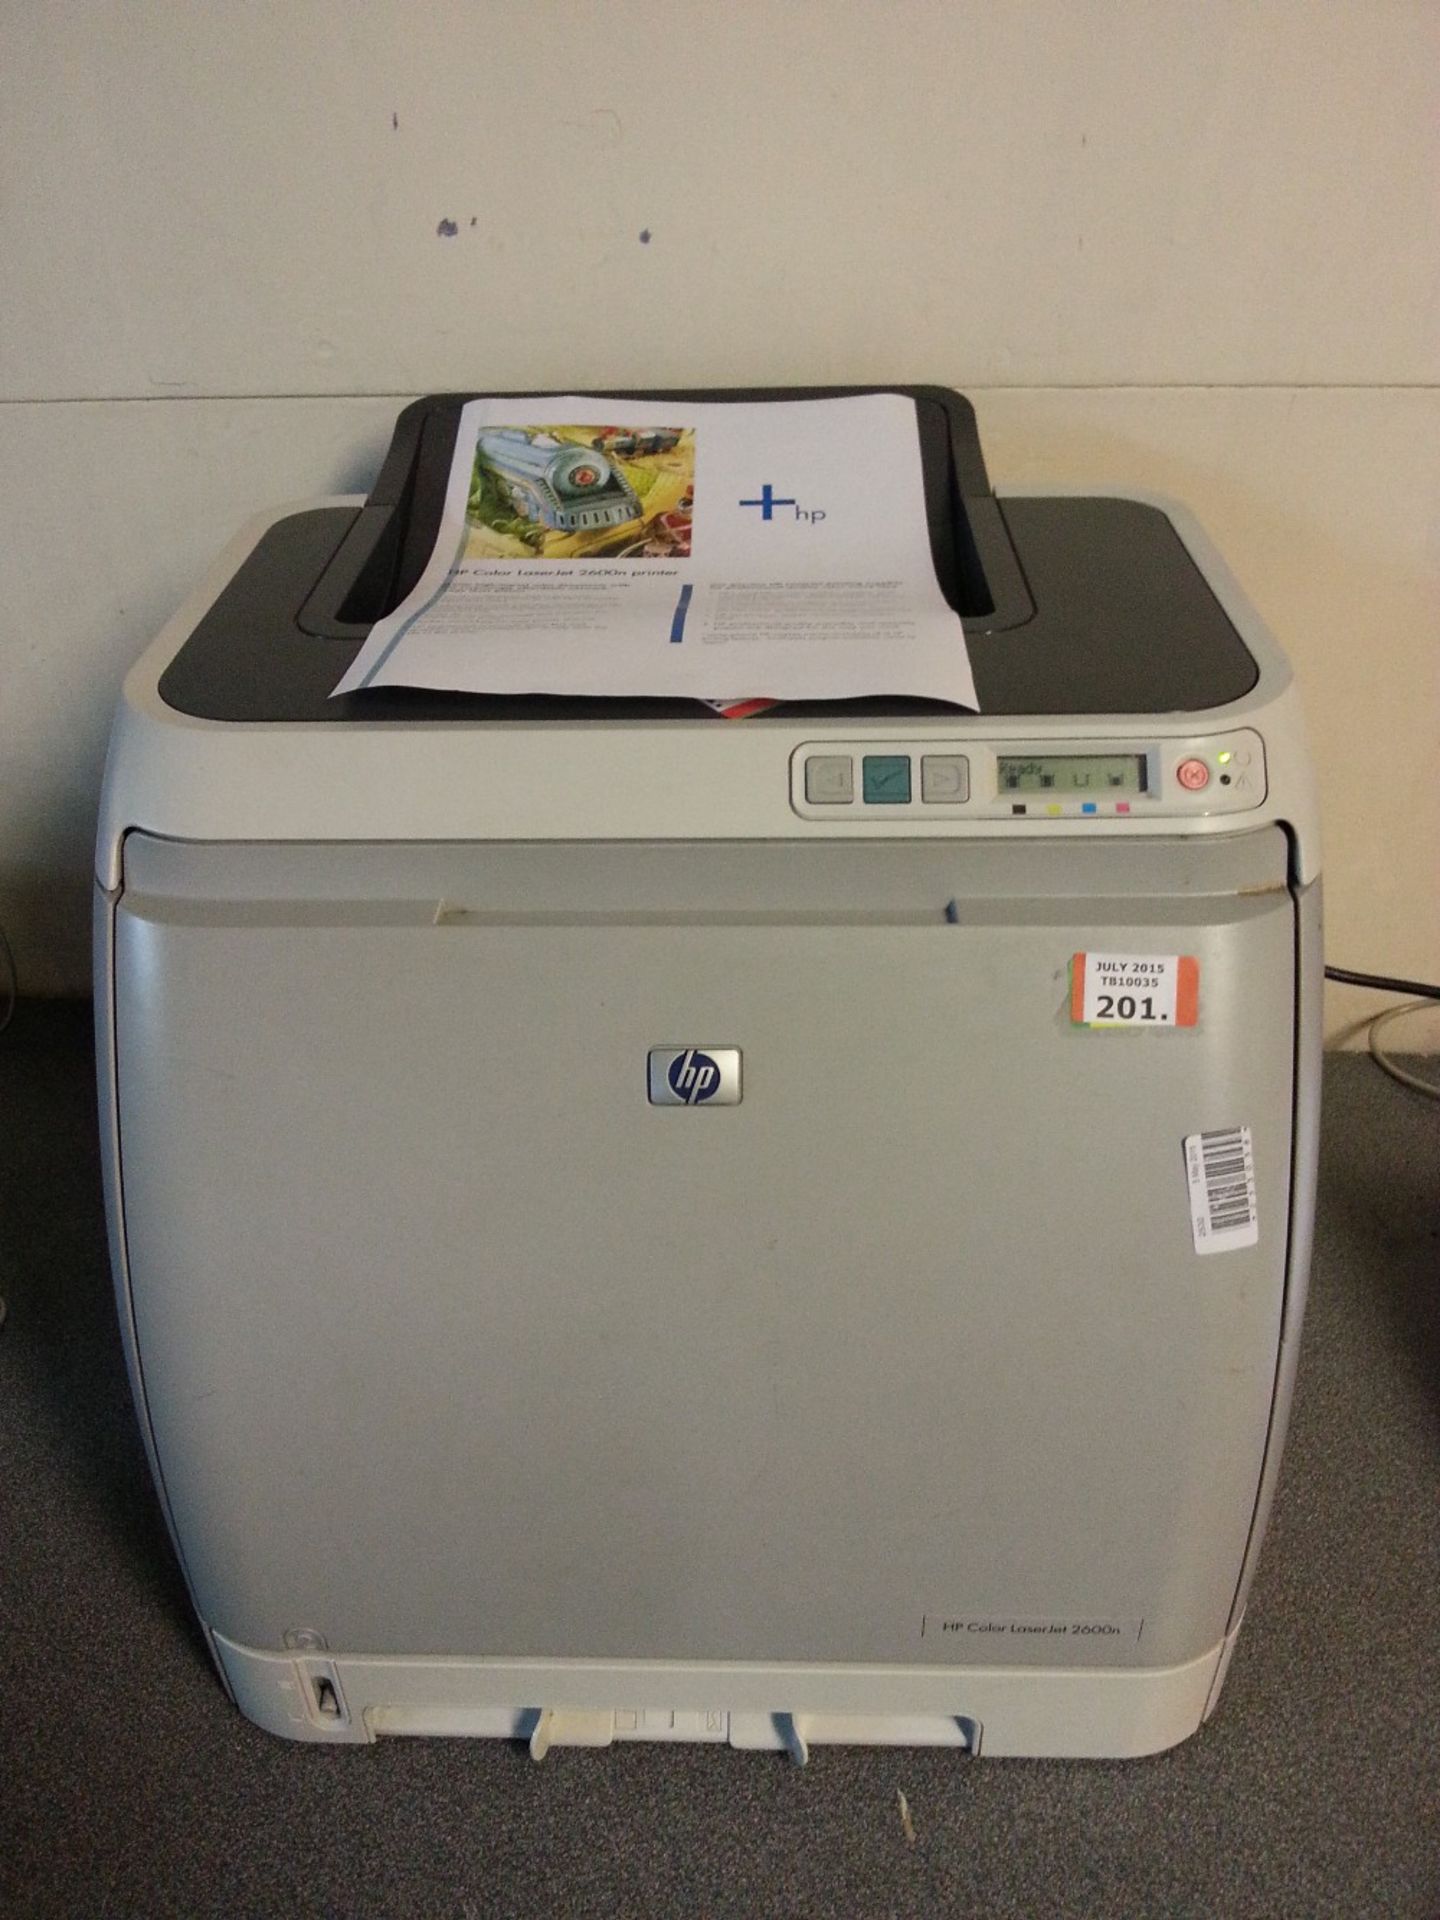 HP Color LaserJet 2600N Printer - USB - Network - Test Page Ok